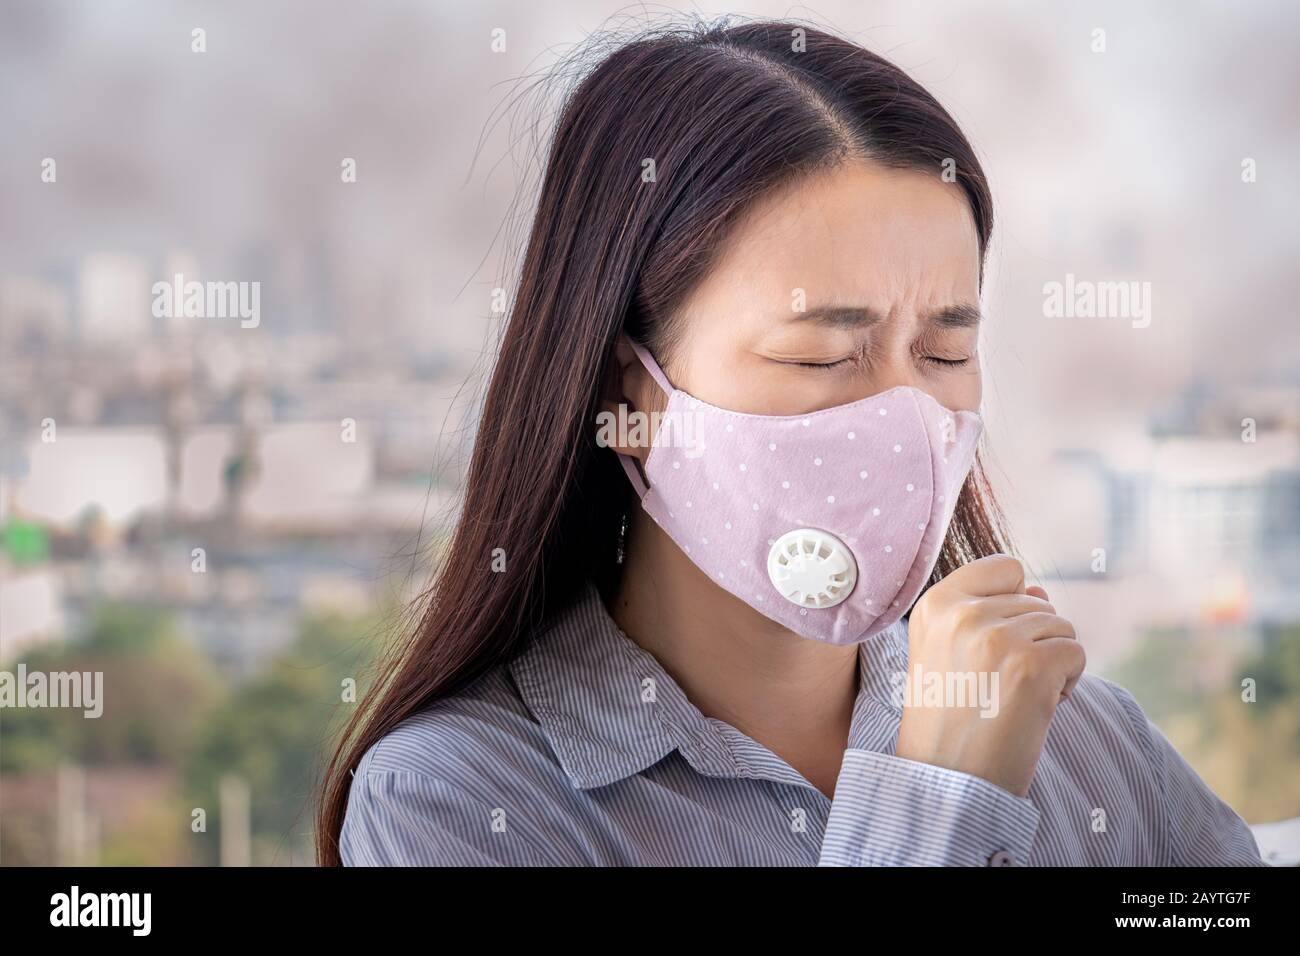 Las personas que se sienten enfermas por la contaminación del aire, el medio ambiente tiene efectos nocivos o venenosos. La mujer de la ciudad que lleva máscara facial para protegerse Foto de stock